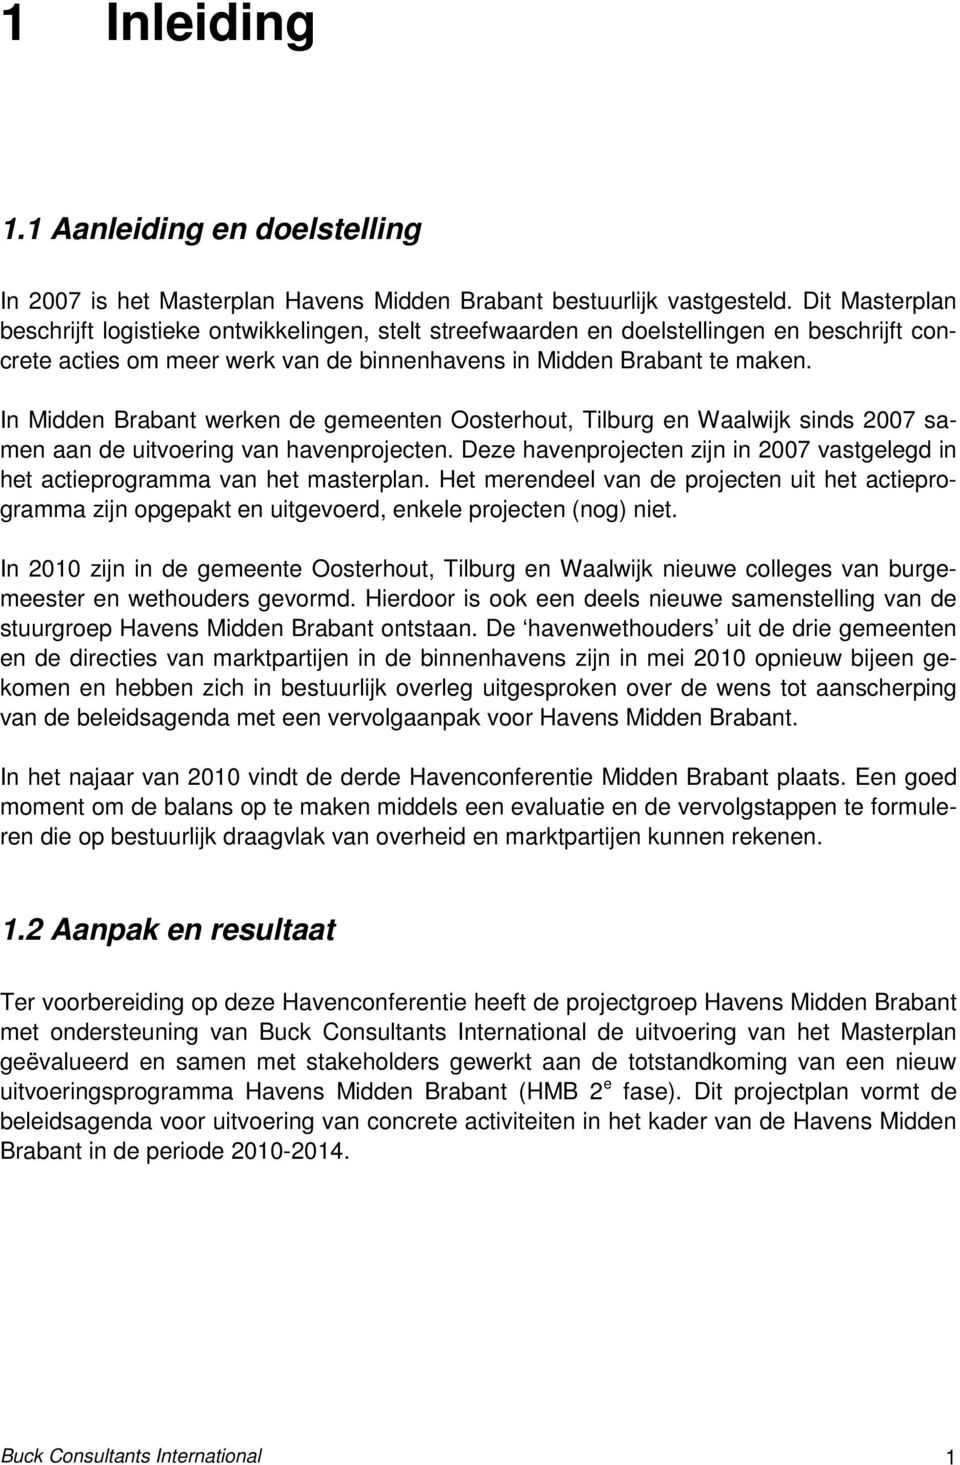 In Midden Brabant werken de gemeenten Oosterhout, Tilburg en Waalwijk sinds 2007 samen aan de uitvoering van havenprojecten.